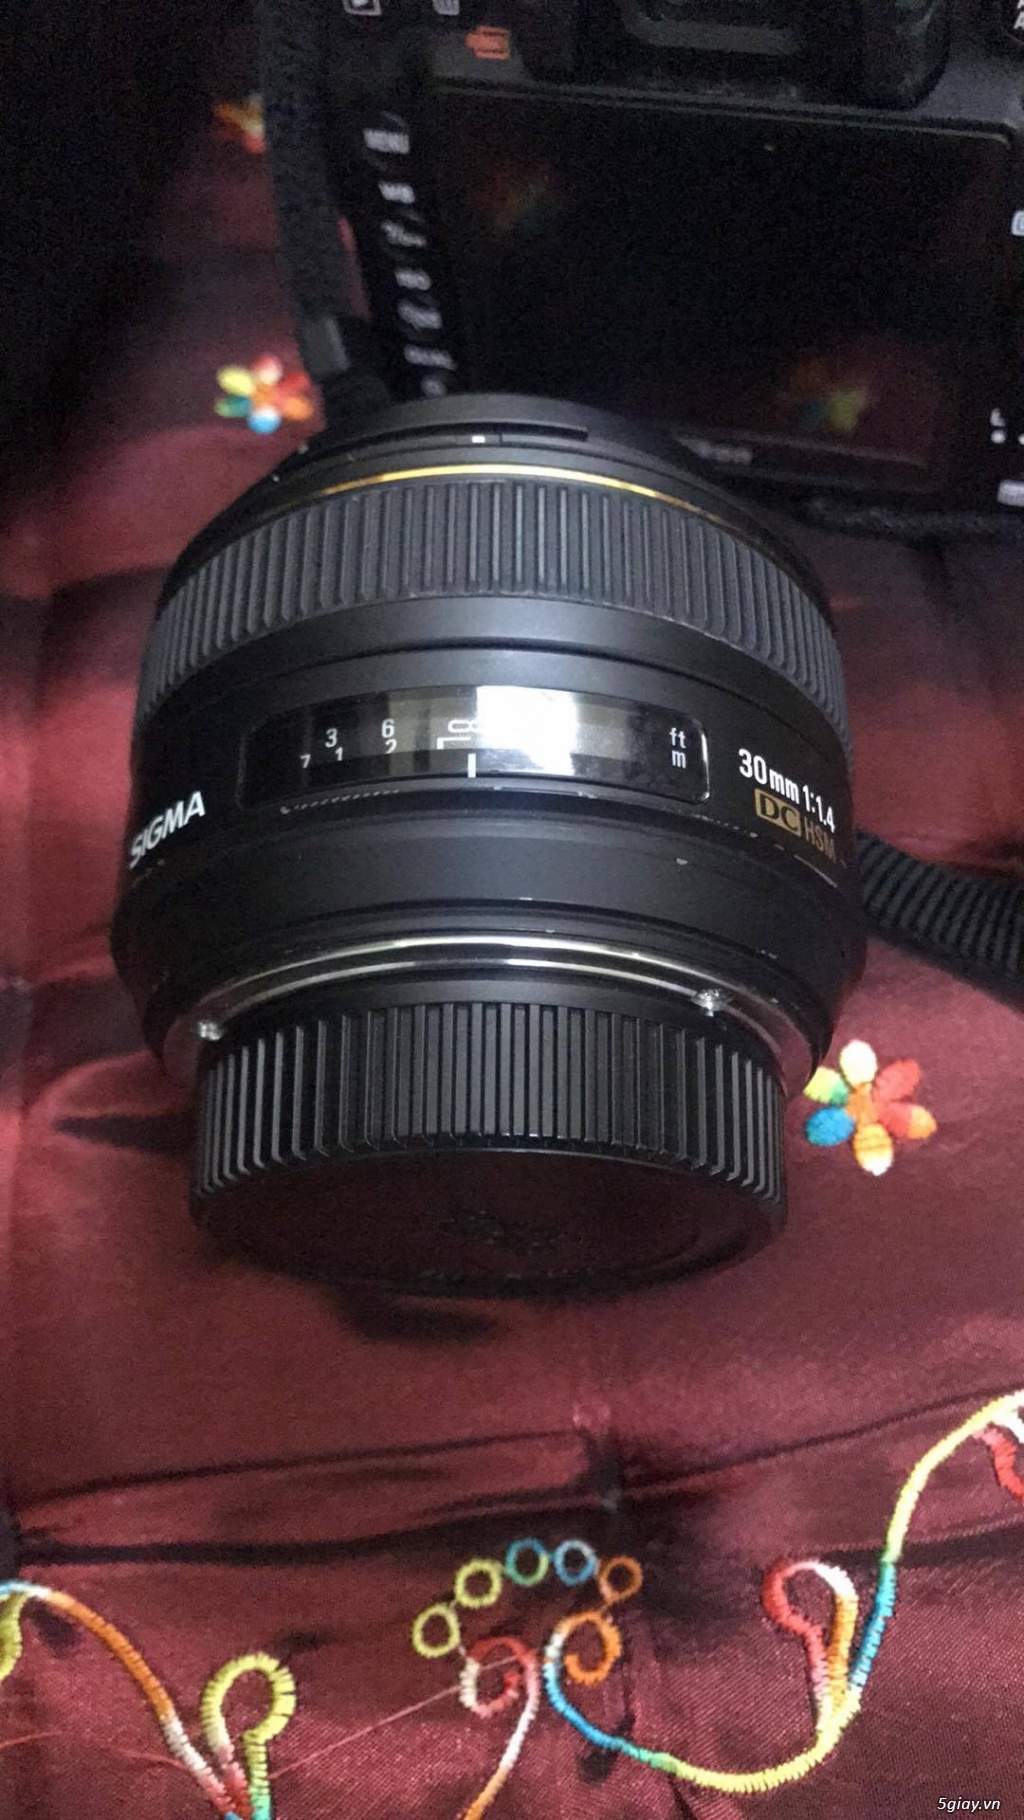 Nikon D7000 đi kèm lens 18-105mm vs SIGMA 30mm1:1.4 - 4